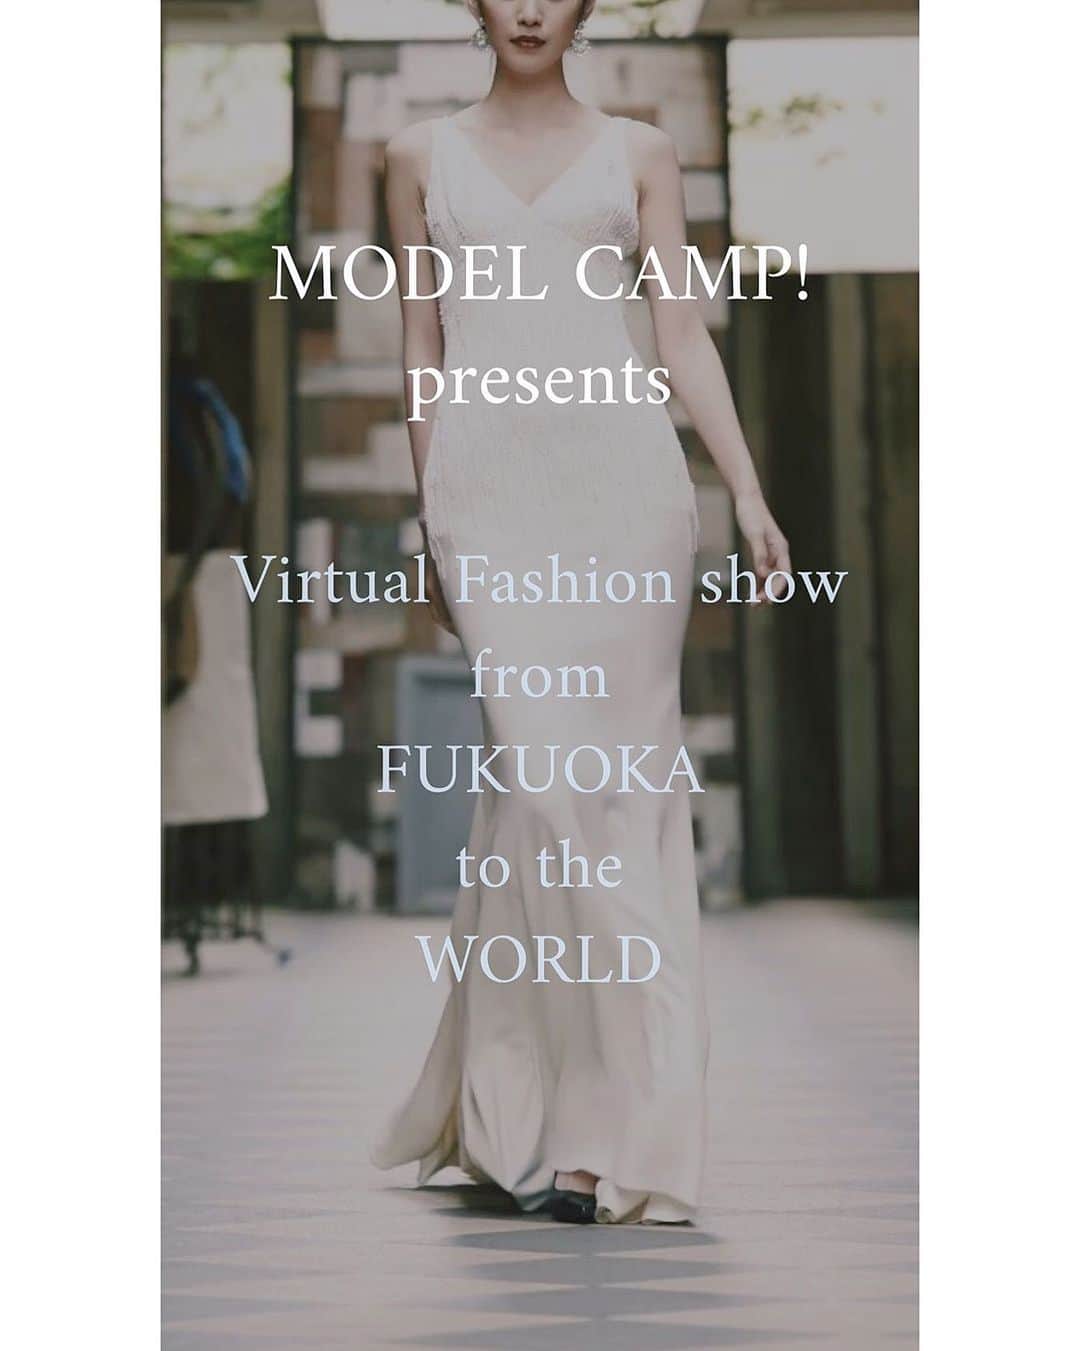 藤本奈月さんのインスタグラム写真 - (藤本奈月Instagram)「《　モデル出演者募集！　》﻿ ﻿ MODEL CAMP! presents Virtual Fashion show﻿ 〜from FUKUOKA to the WORLD〜﻿ ﻿ ーーーーーーーーーーーーー﻿ ・﻿ 「Fashion is Freedom」﻿ をテーマに、開催するオンラインファッションショー。﻿ 海外でも話題になっている、バーチャルファッションショーからインスパイア。﻿ コロナショックで、夢を失いかけているモデル志望者や、未来の仕事方法を模索しているファッション界のクリエイターの方達と、新しいカタチをつくっていこうとしています。﻿ 今回は、「ファッションショームービー」を2テーマ分作成。﻿ 出演者は、「完全オンライン型オーディション」で選考します。﻿ ・﻿ ーーーーーーーーーーーーー﻿ ﻿ 〜動画作成までの流れ〜﻿ ①WEBオーディション﻿ 詳細は下記参照﻿ ②オンラインレッスン﻿ ヘアメイク、スタイリスト、カメラマンなどから、オンラインワークショップを受講し、スキルを磨く﻿ ③モデルが各自、自宅などで撮影﻿ レッスンにて学んだ内容を踏まえて、セルフディレクションした動画を撮影﻿ ④集まった動画をこちらで編集﻿ ﻿ ーーーーーーーーーーーーー﻿ ﻿ 〜募集期間〜﻿ 2020年6月29日（月）〜2020年7月12日（日）﻿ ﻿ ーーーーーーーーーーーーー﻿ ﻿ 〜オーディション概要〜﻿ ① @model_camp.jp をフォロー！﻿ ②オーディション案内投稿へいいね&参加表明コメント﻿ ※いいね！だけでは応募にはならないので、コメントを入れてね！﻿ ③ アースカラーを取り入れたランウェイ動画をご自身のアカウントに投稿！﻿ アースカラーの取り入れ方は自由！﻿ #modelcamp_virtual を忘れずに！﻿ ④ Model campアカウントにてリポストされると、応募完了！﻿ ﻿ ーーーーーーーーーーーーー﻿ ﻿ 〜応募条件〜﻿ ・アカウントを公開している方﻿ ・ジェンダーも年齢も身長も制限、指定はありません！﻿ ・経験有無も関係なく、どなたでも応募可能です！﻿ ﻿ ーーーーーーーーーーーーー﻿ ﻿ 〜当選者発表方法〜﻿ 募集期間終了後、インスタグラムDM、当アカウントにてお知らせいたします。﻿ ーーーーーーーーーーーーー﻿ 〜注意事項〜﻿ ・特定の事務所や団体などに所属されている方は、許可を得てご参加ください﻿ ・報酬は発生いたしません。﻿ ーーーーーーーーーーーーー﻿ ﻿  国際的に活躍している 世界各国のファッションモデルが このプロジェクトに賛同して 沢山の映像を提供してくれています。 そんな一流の皆さんと ヴァーチャルの舞台にて映像で共演するチャンスです！ 沢山のご応募をお待ちしております！ . . . #モデル #サロンモデル #撮影モデル #ポートレートモデル #モデル募集 #ファッション #model #ポートレート #メイク #instagood #fashion #キッズモデル #メンズモデル #モデル募集中 #ベビーモデル #フィットネスモデル #モデルオーディション #キッズモデルオーディション #モデルオーディション募集  #ファッションショー #おうちファッションショー #おうちでファッションショー #お家ファッションショー #自宅ファッションショー #ファッションショーモデル #fashionshow #ootd #runway」6月29日 20時52分 - natsuki_n2k